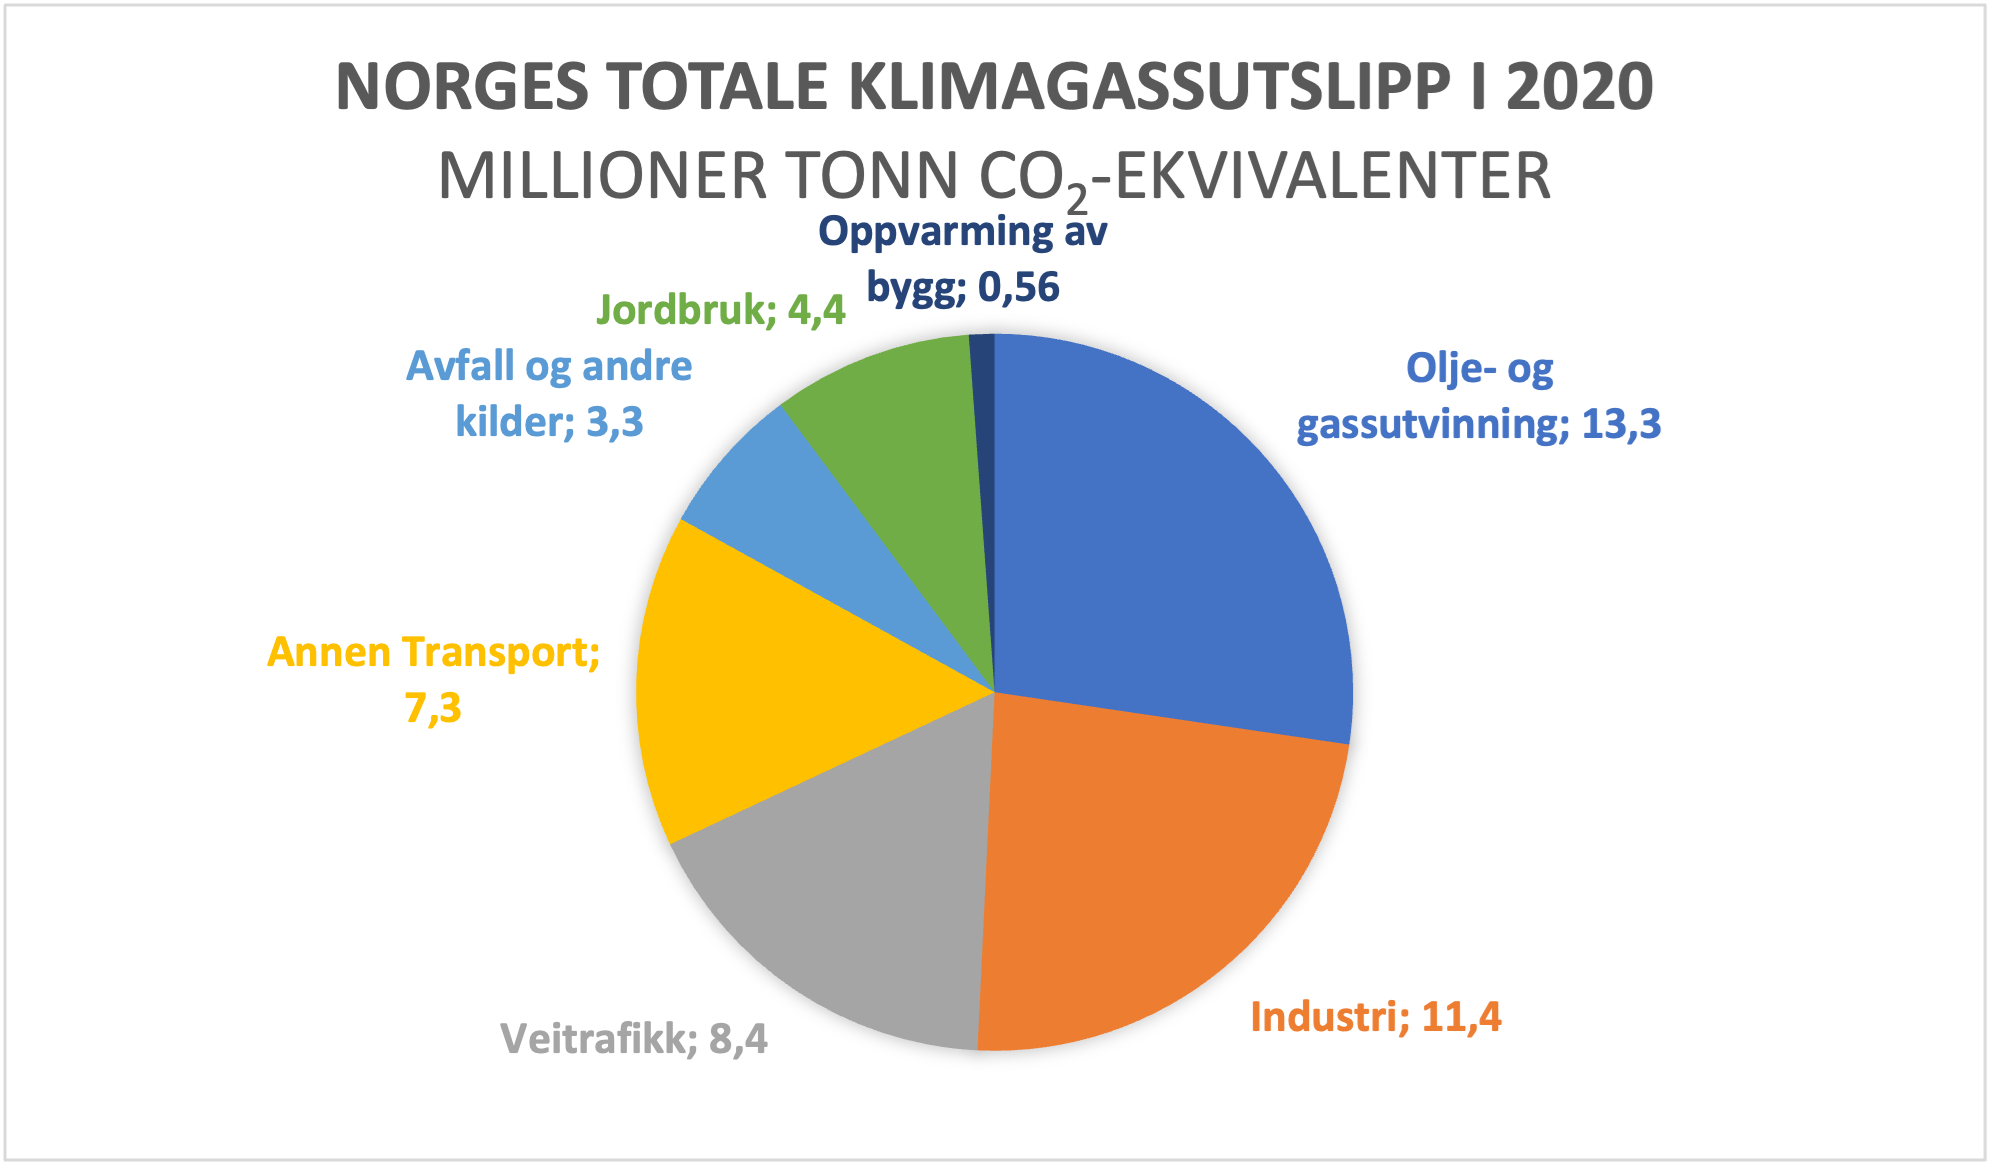 Norges totale klimagassutslipp i 2020 i millioner tonn CO2-ekvivalenter. Veitrafikk og annen transport utgjør 15,7%